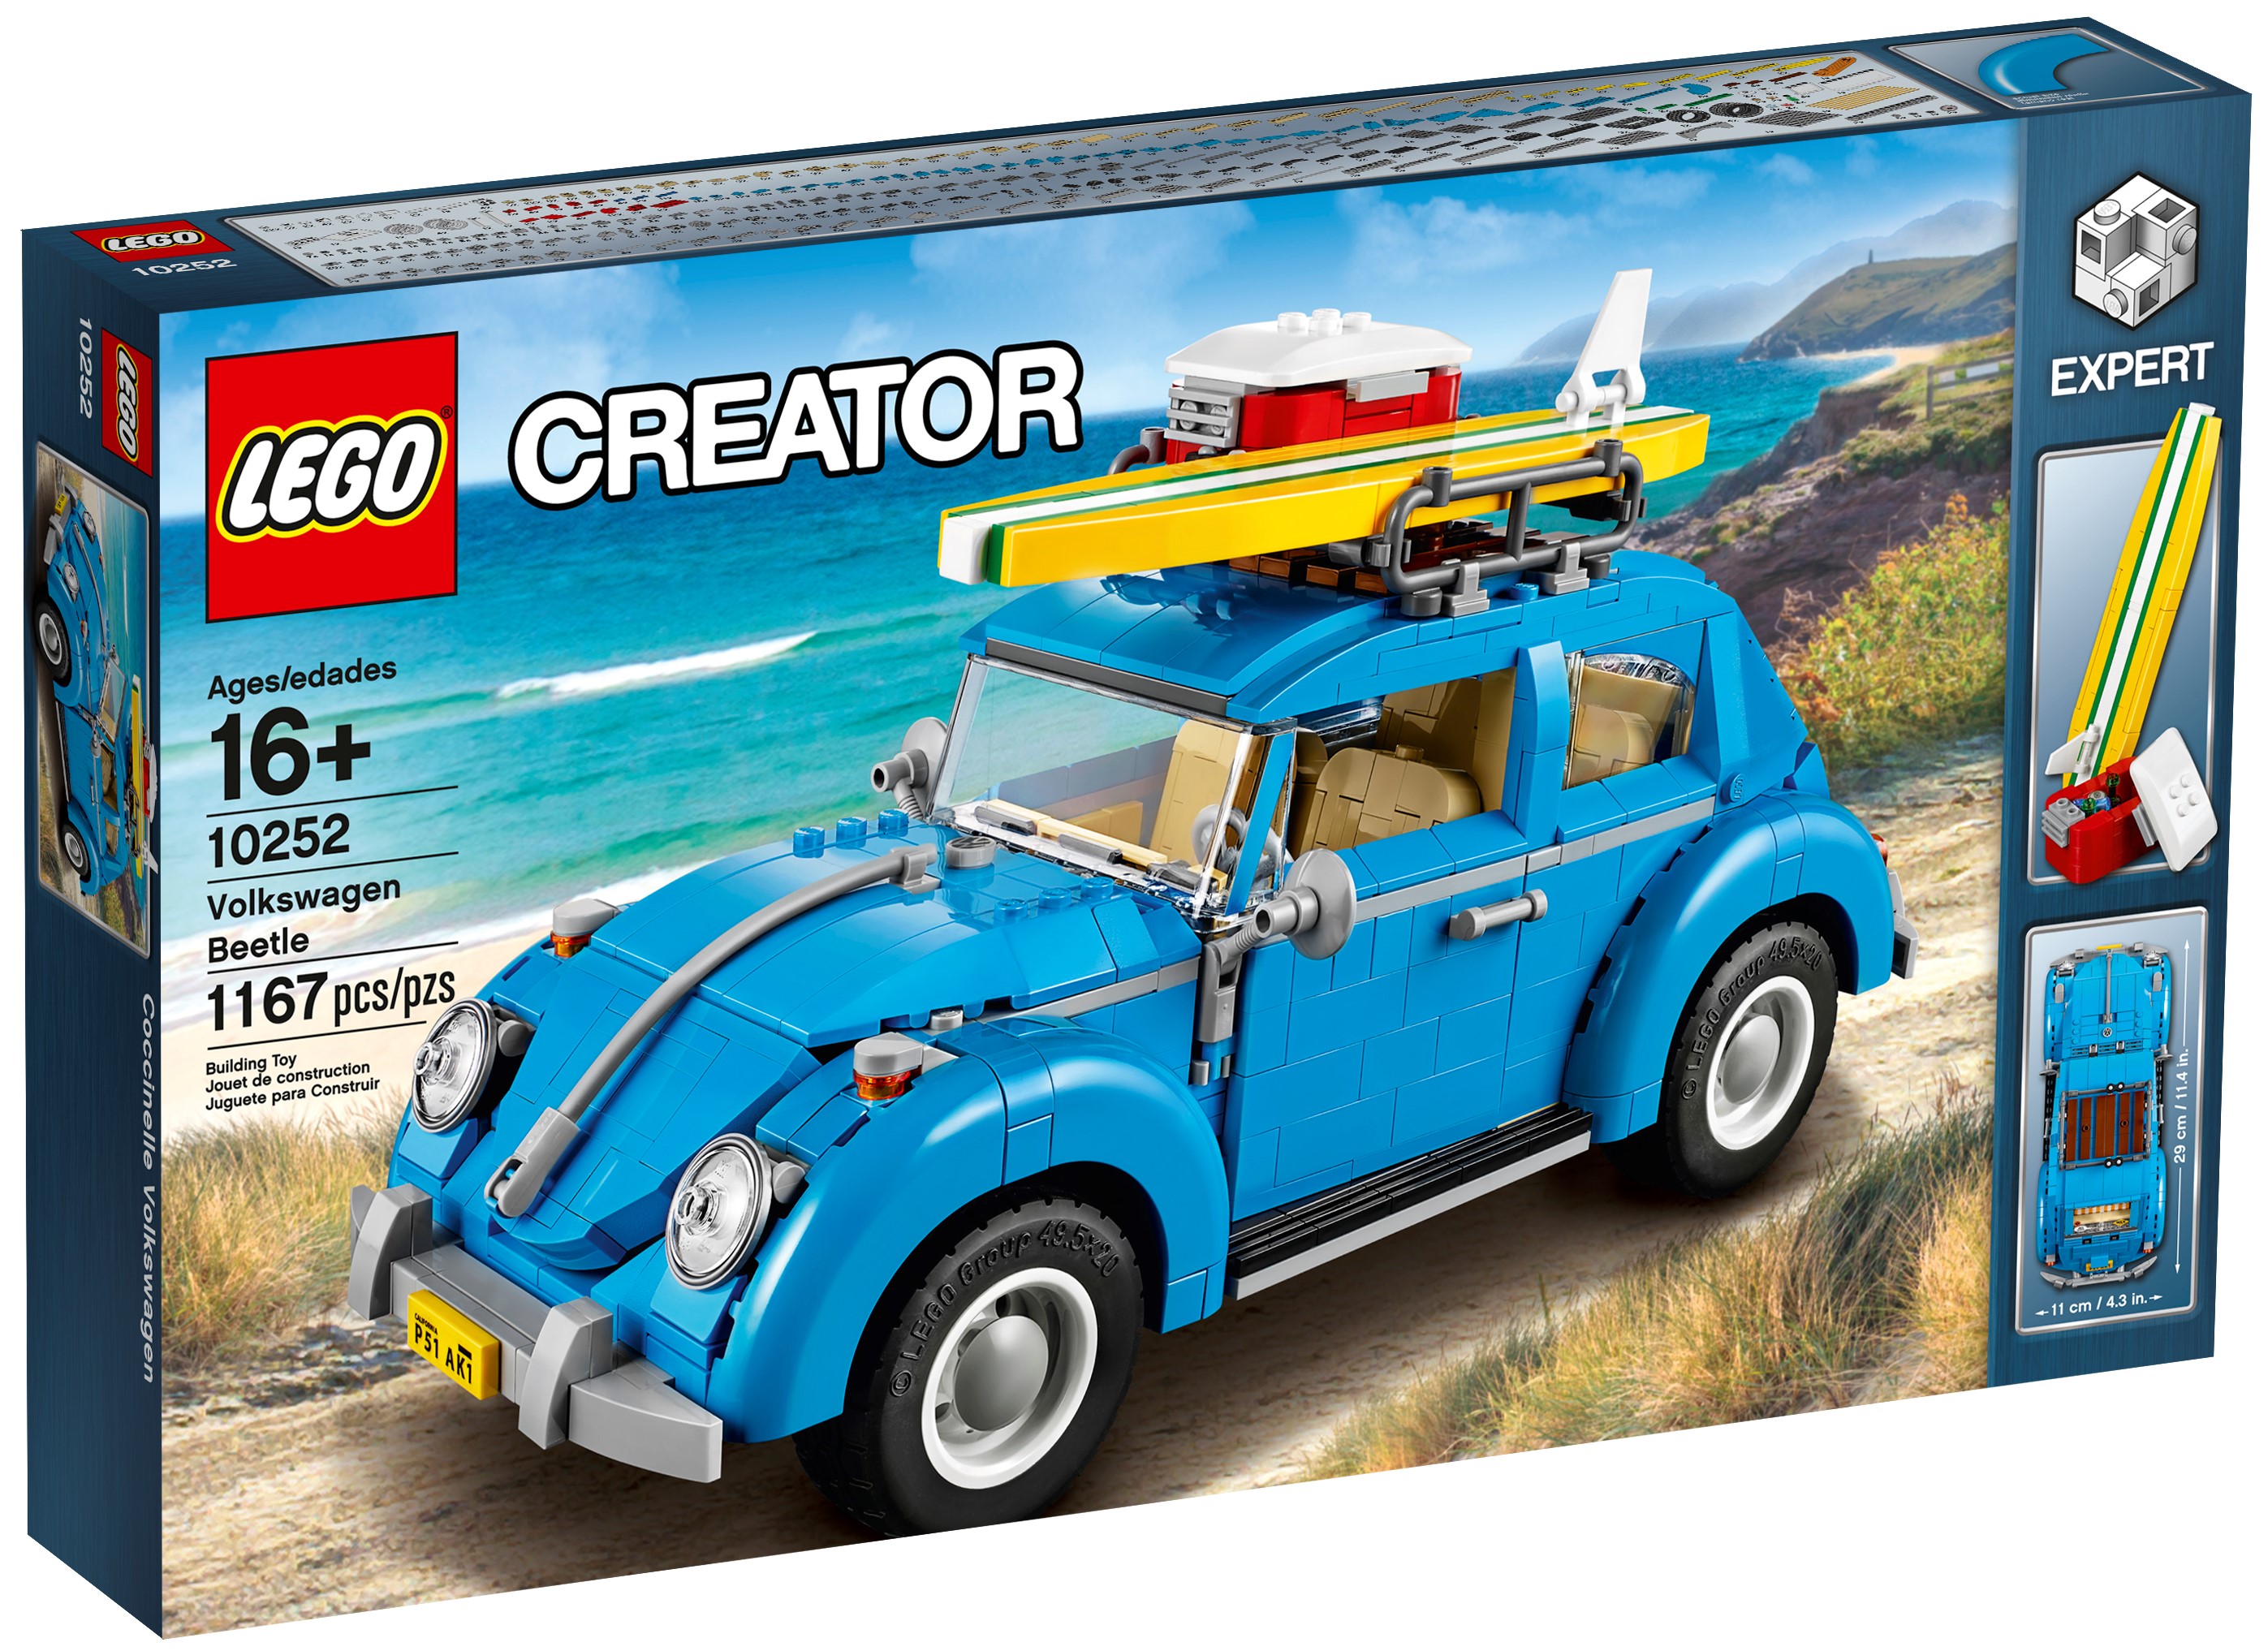 Volkswagen Beetle 10252 | Creator 